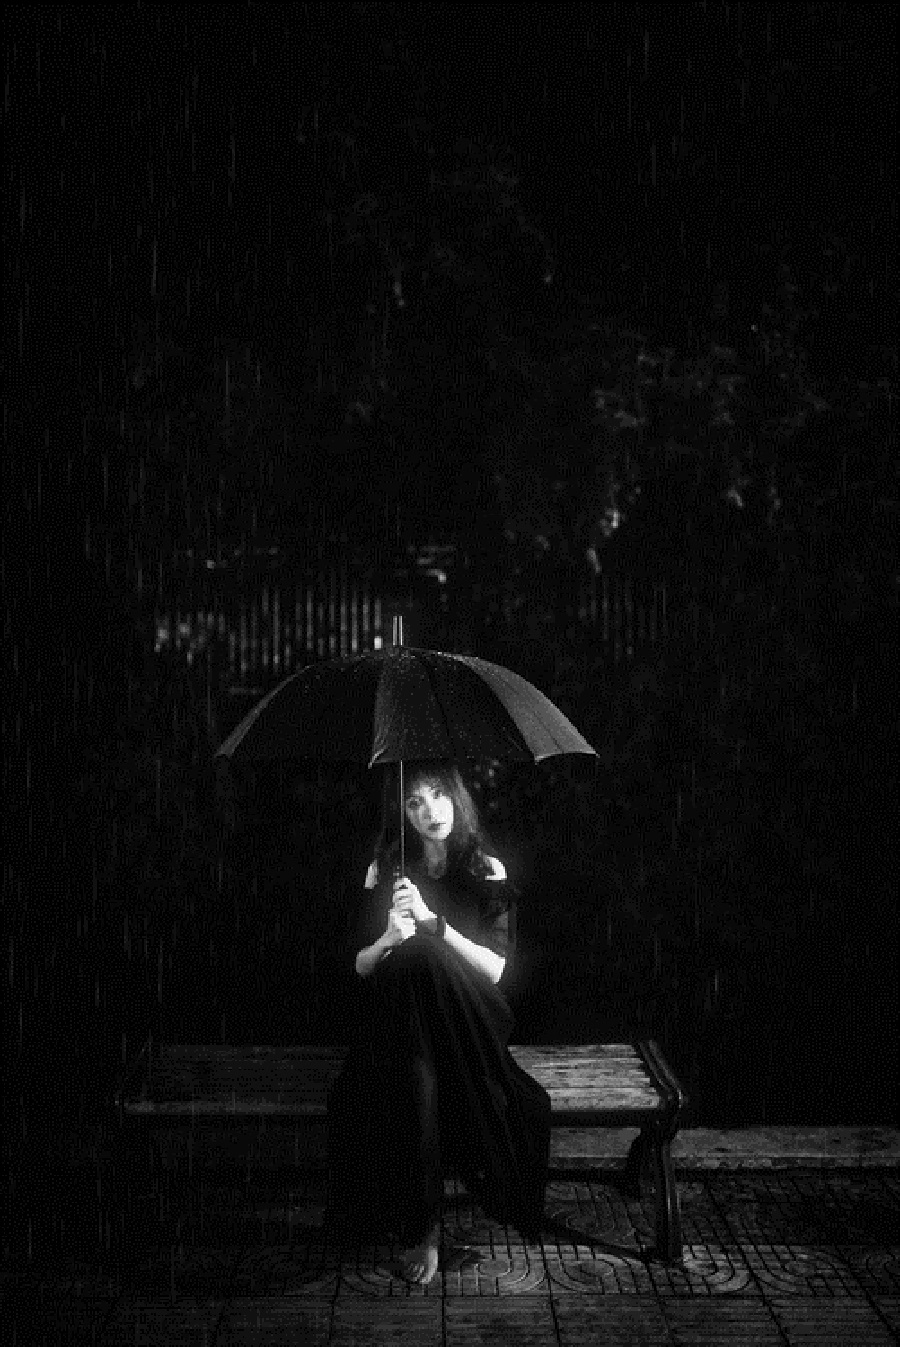 下雨的夜晚 一个人图片